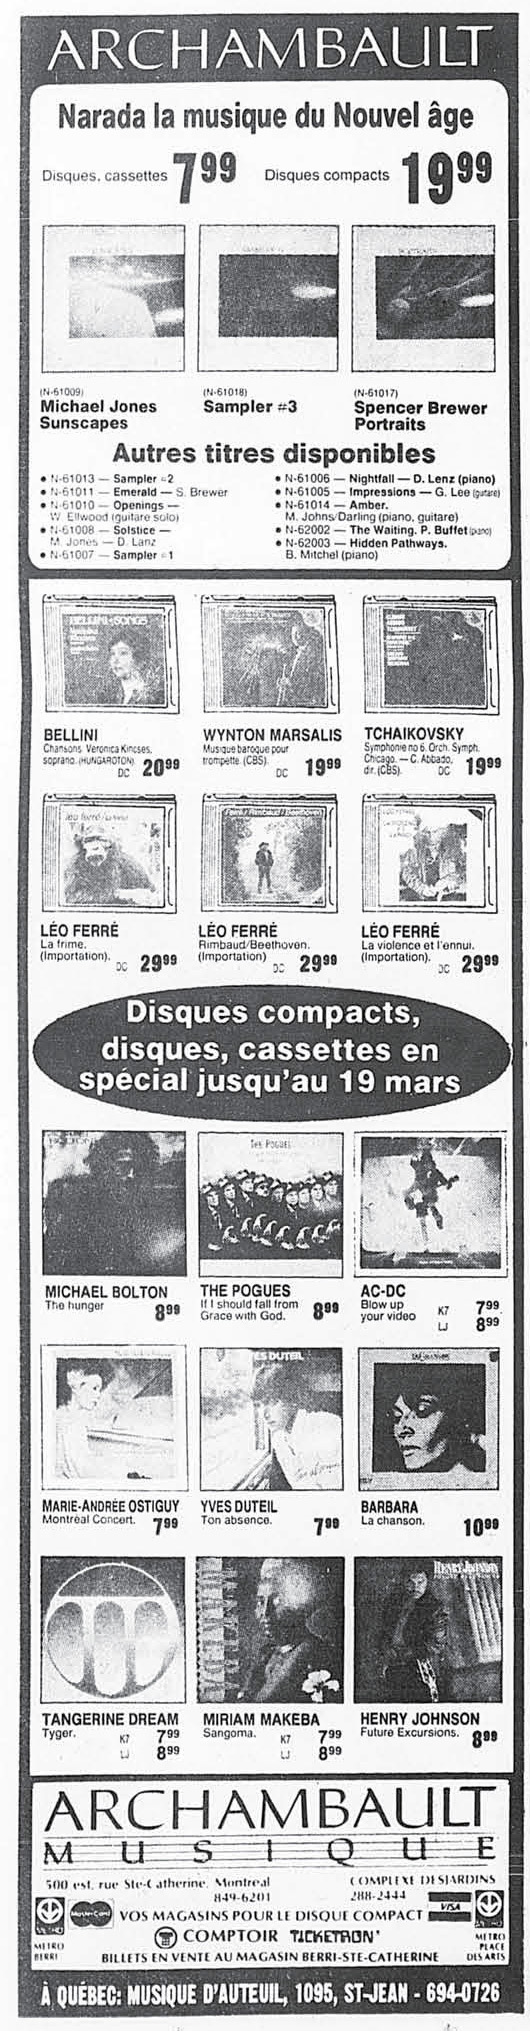 Léo Ferré - La Presse, 12 mars 1988, E. Arts et spectacles